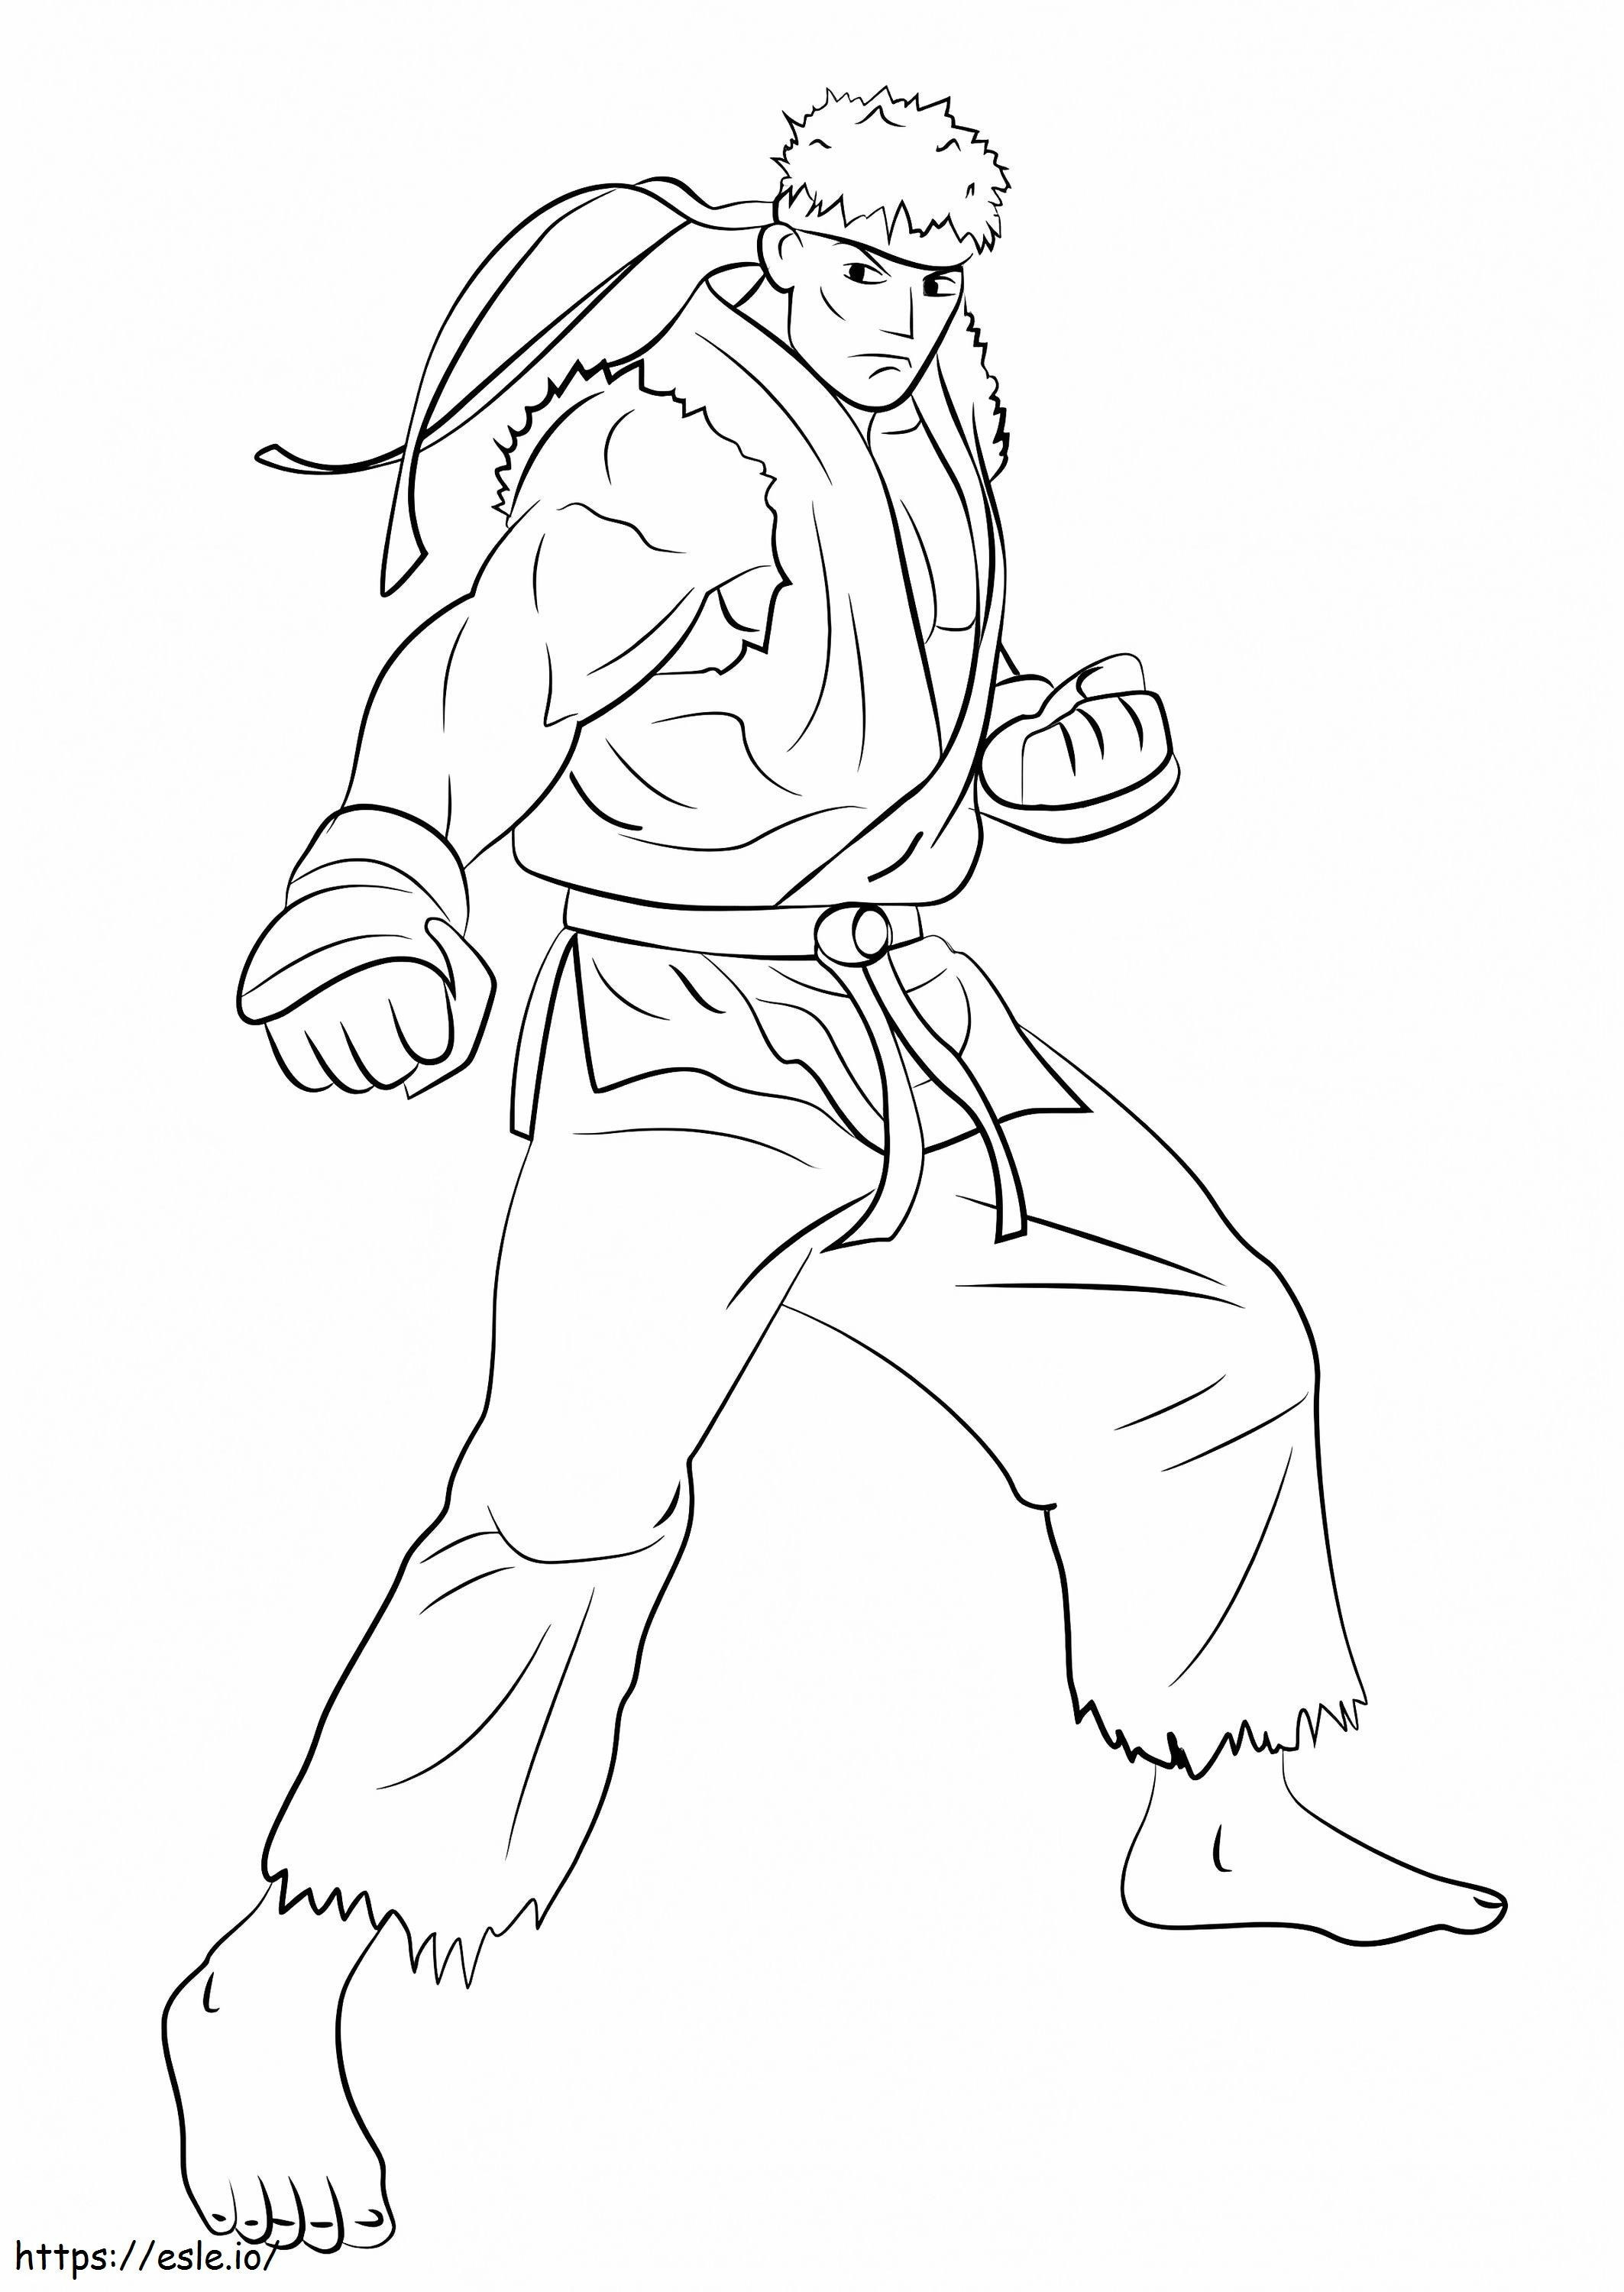 Ryu din Street Fighter de colorat